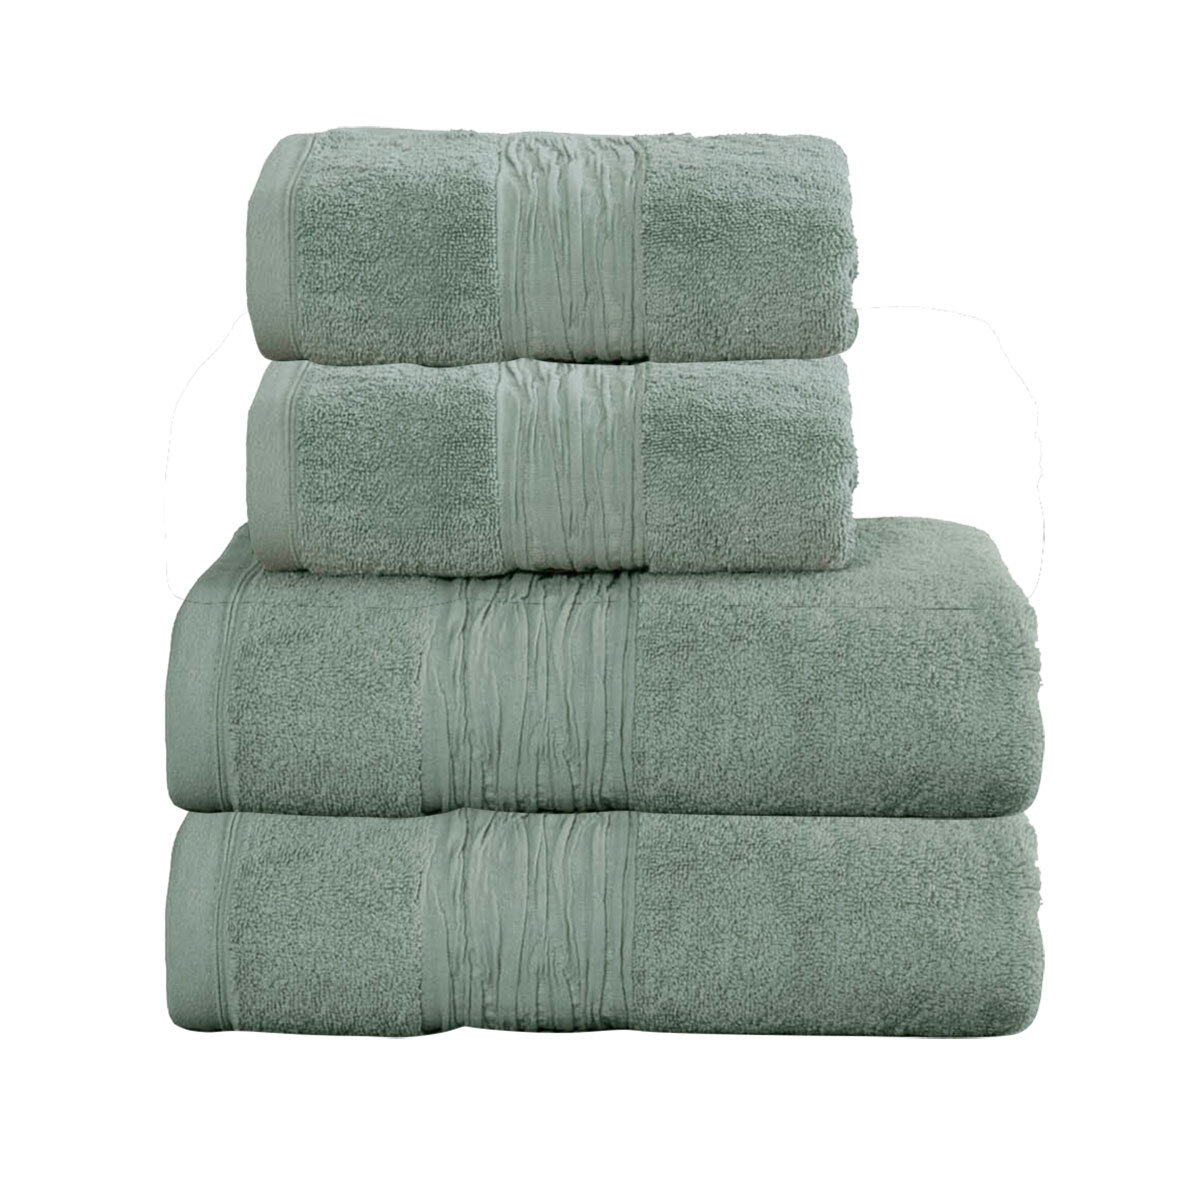 Lazy Linen 4 Piece Hand & Bath Sheet Towel Bundle in 6 Colours 